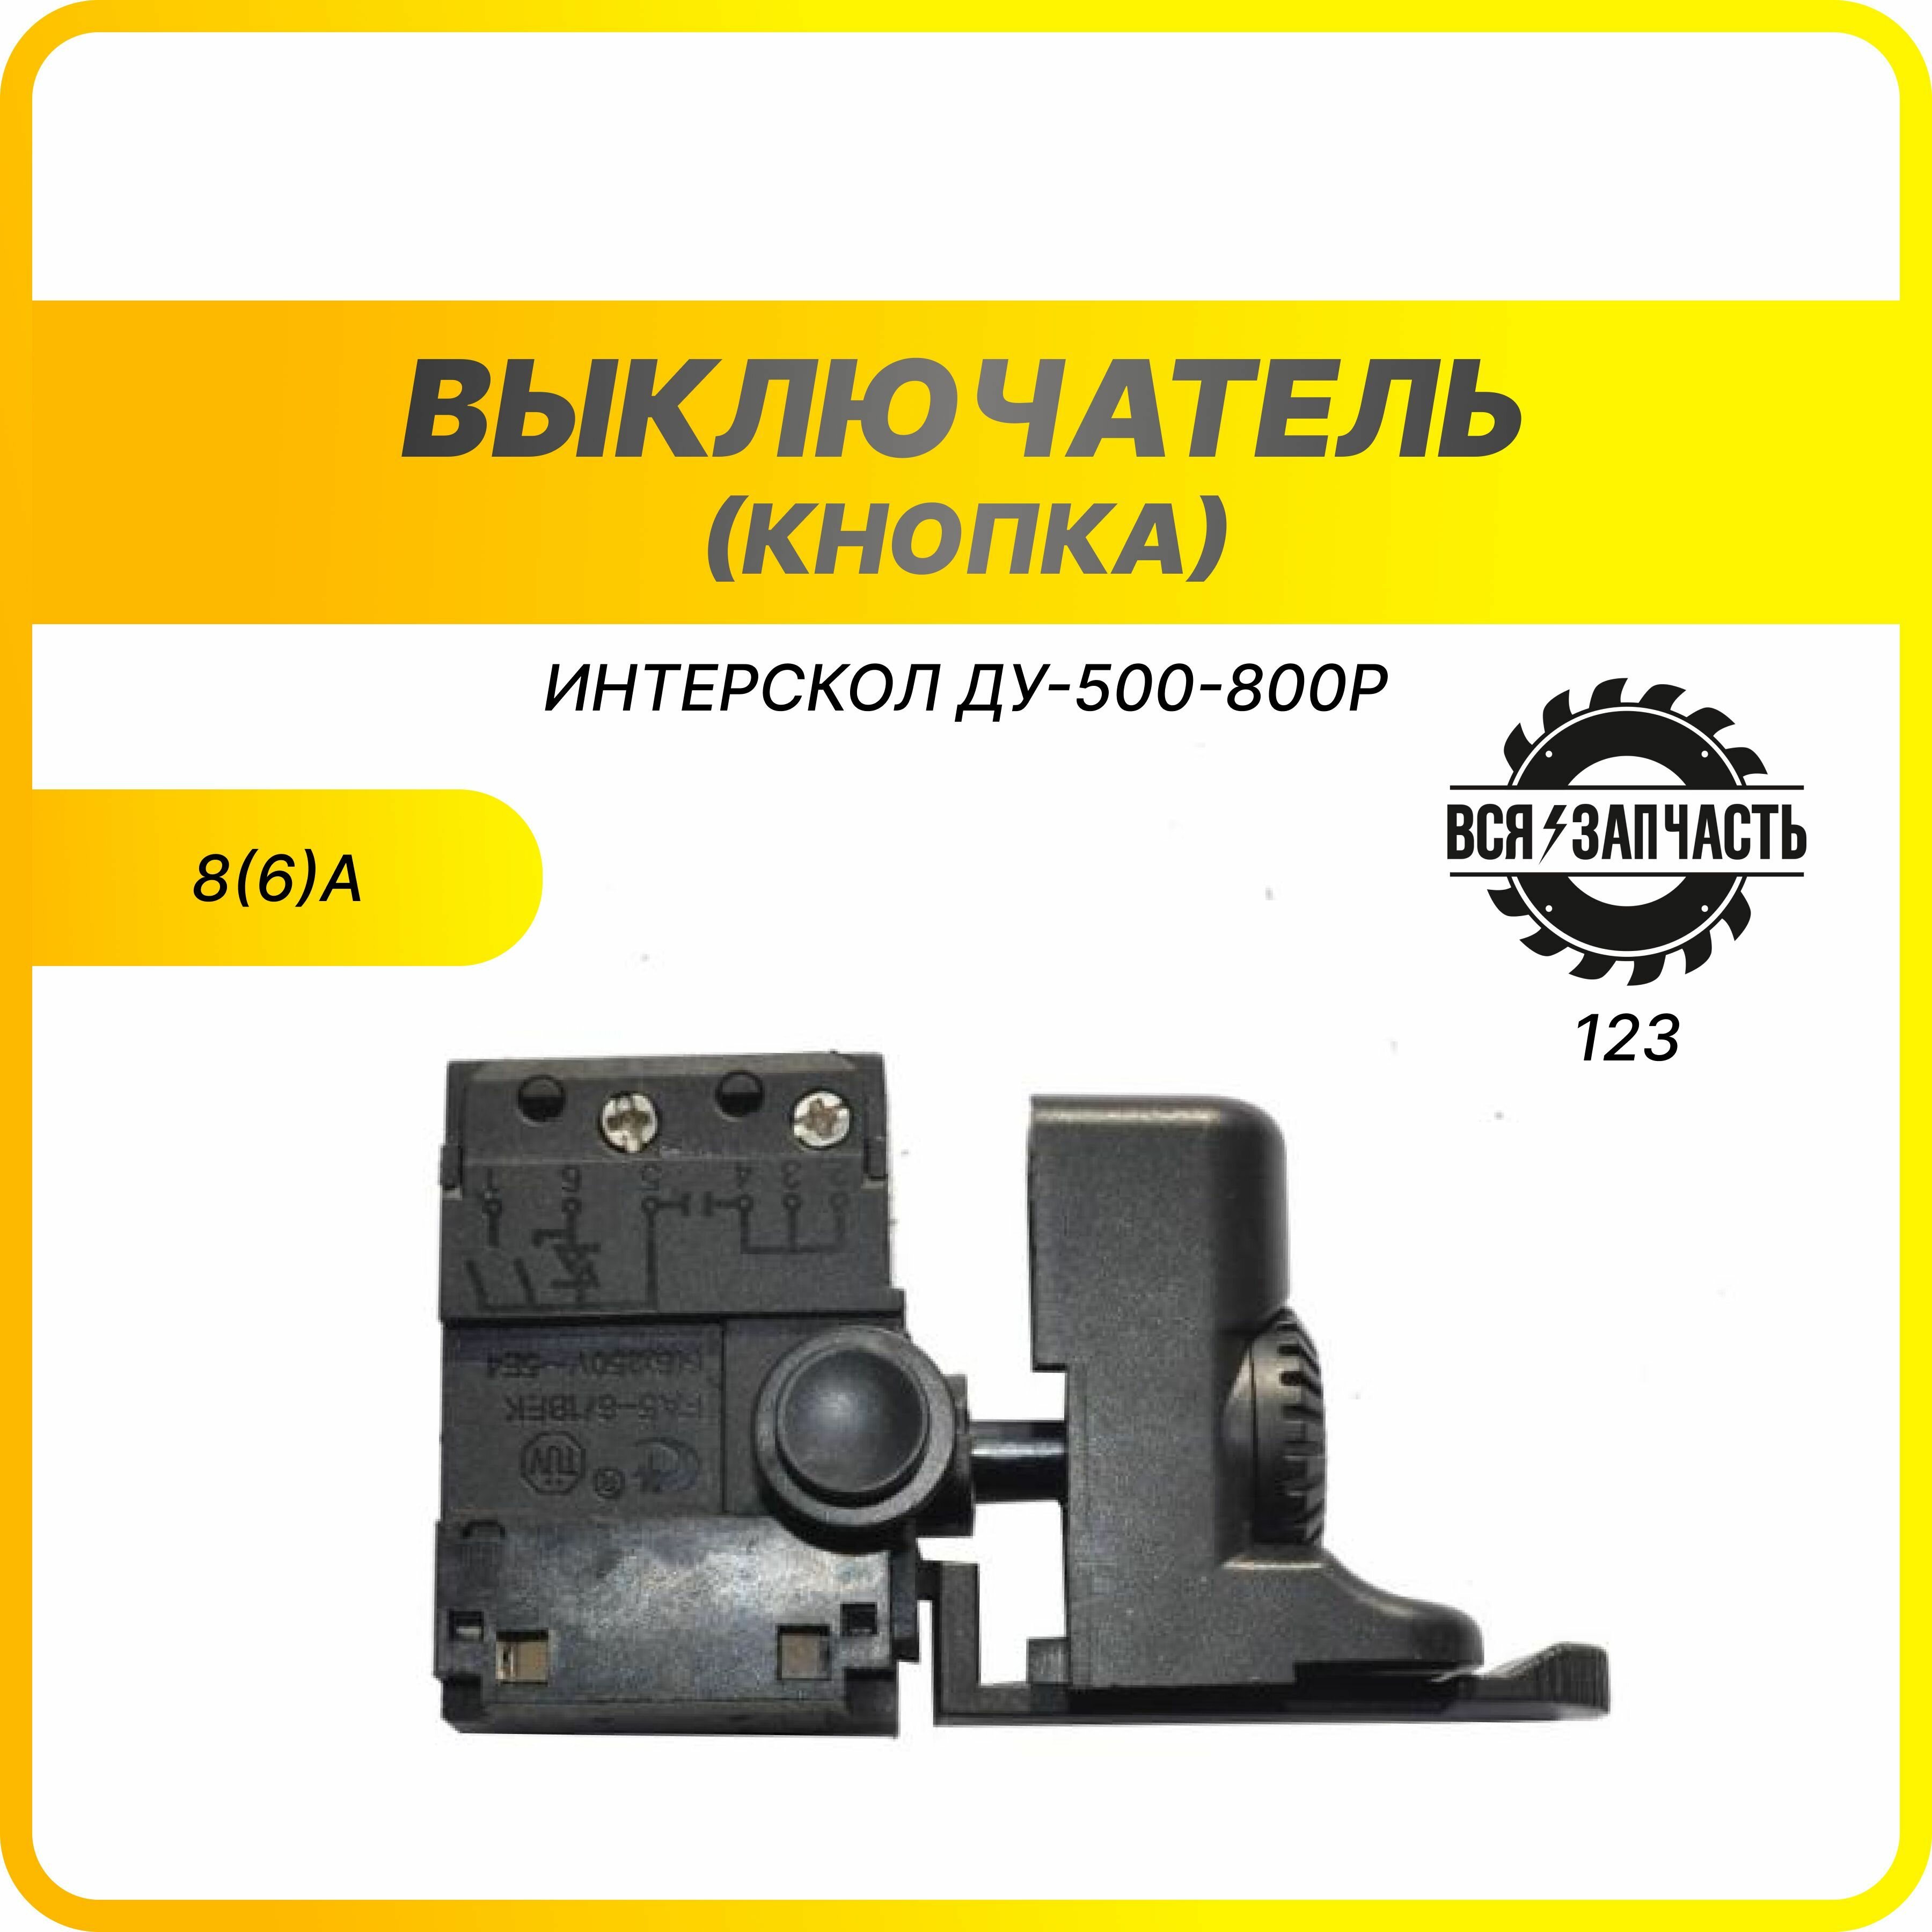 Выключатель (кнопка) для дрели Интерскол ДУ-500-800Р (123VZ)